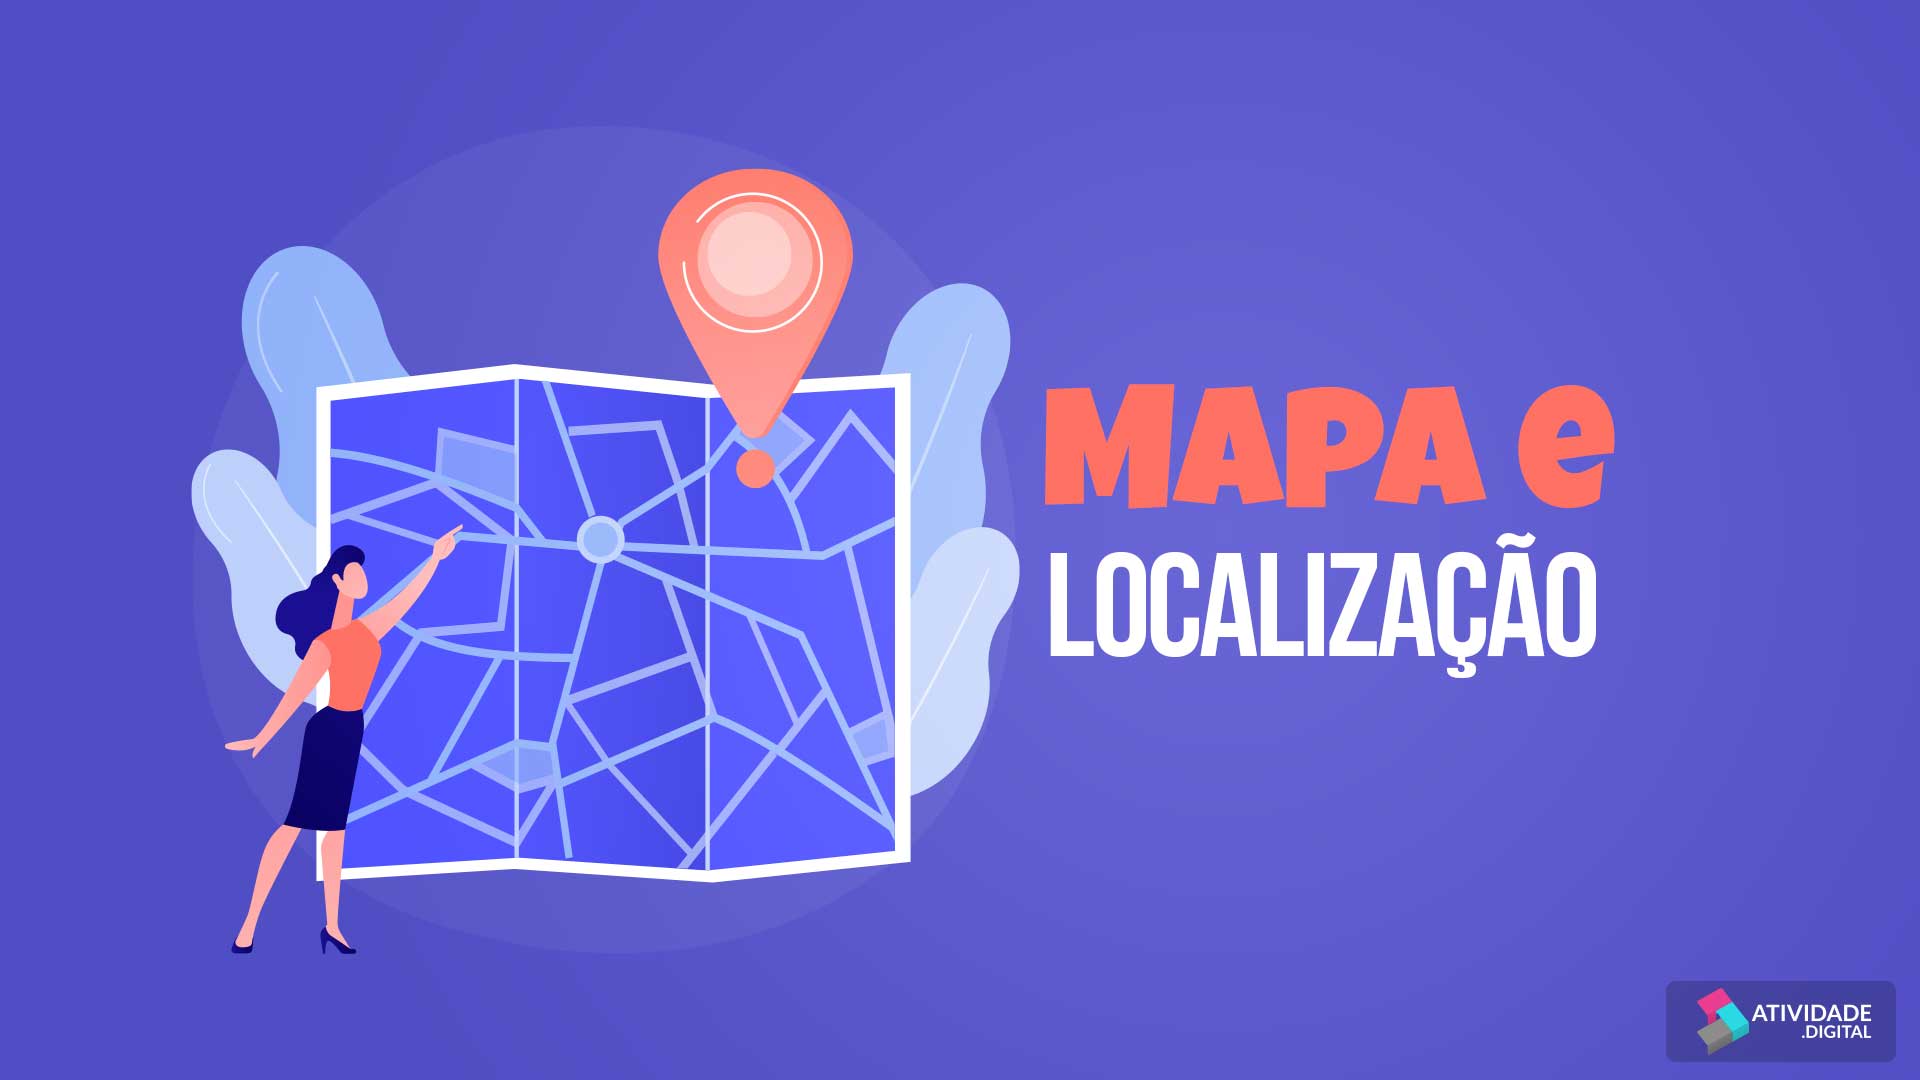 Mapa e Localização